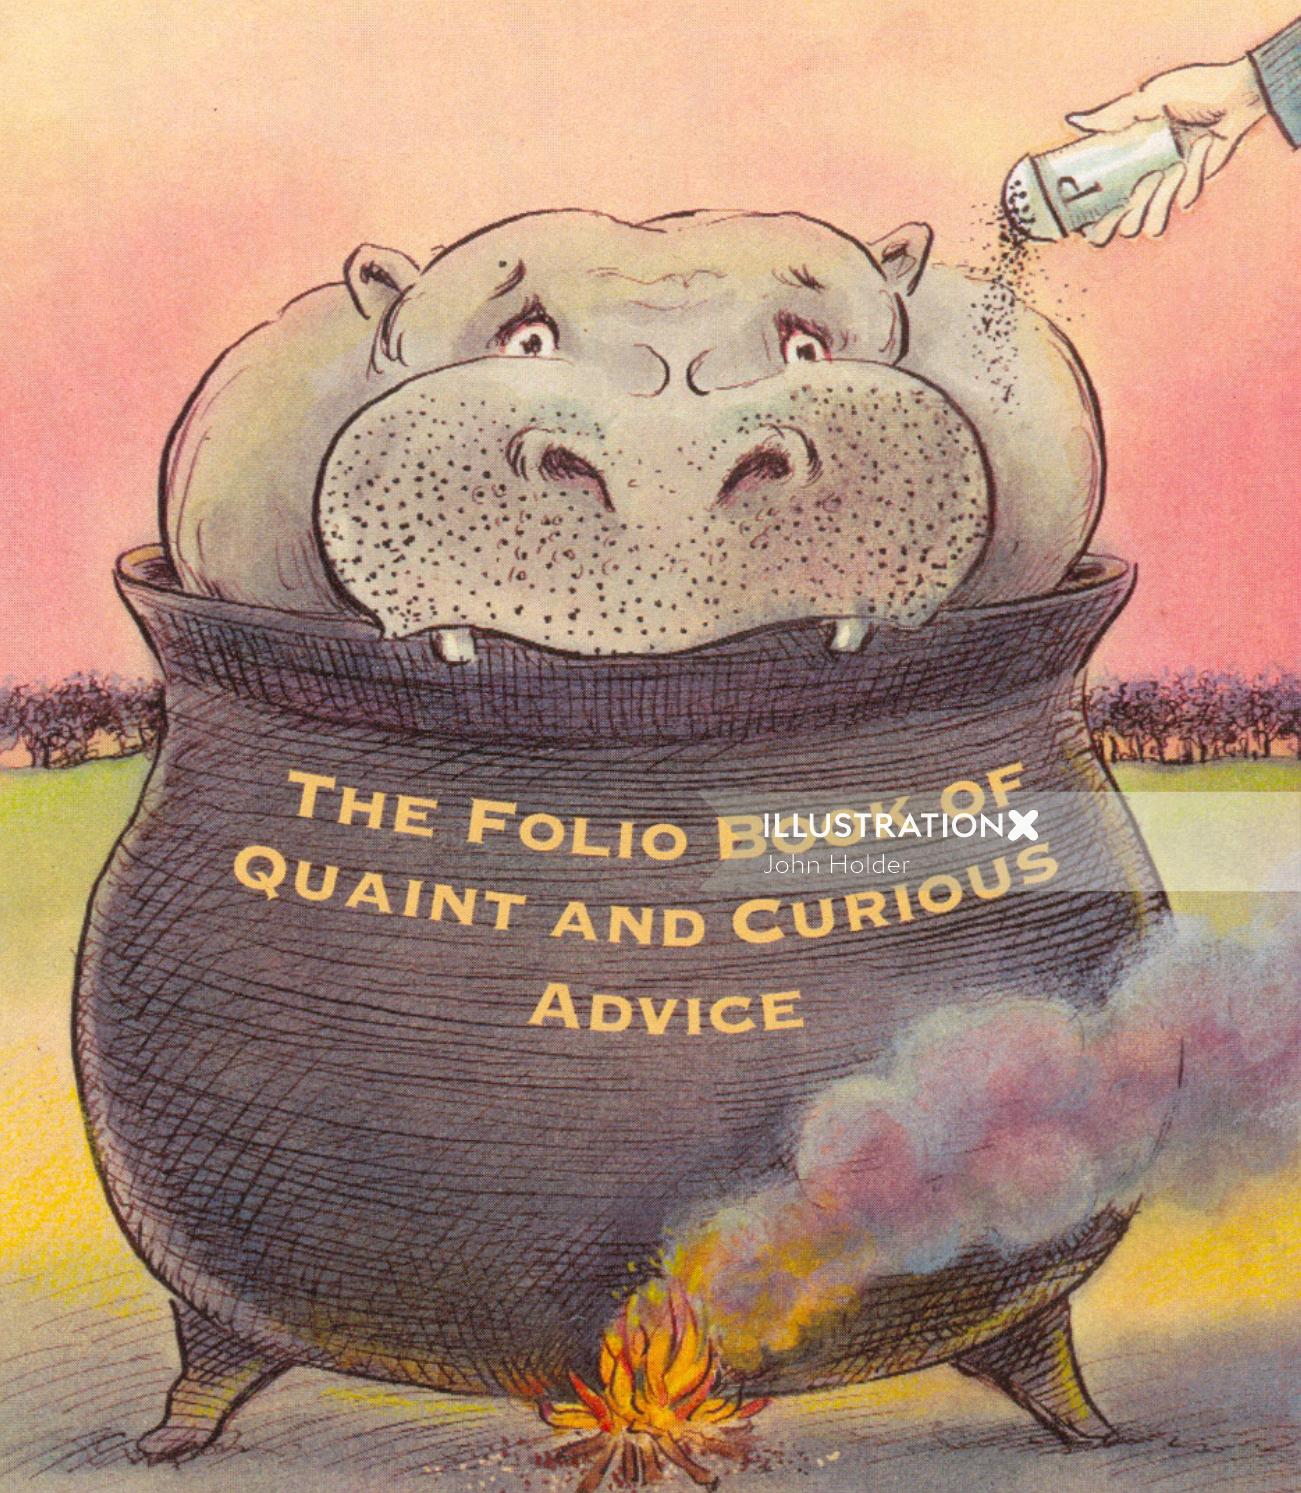 Ilustração para o livro de fólio de conselhos curiosos e curiosos